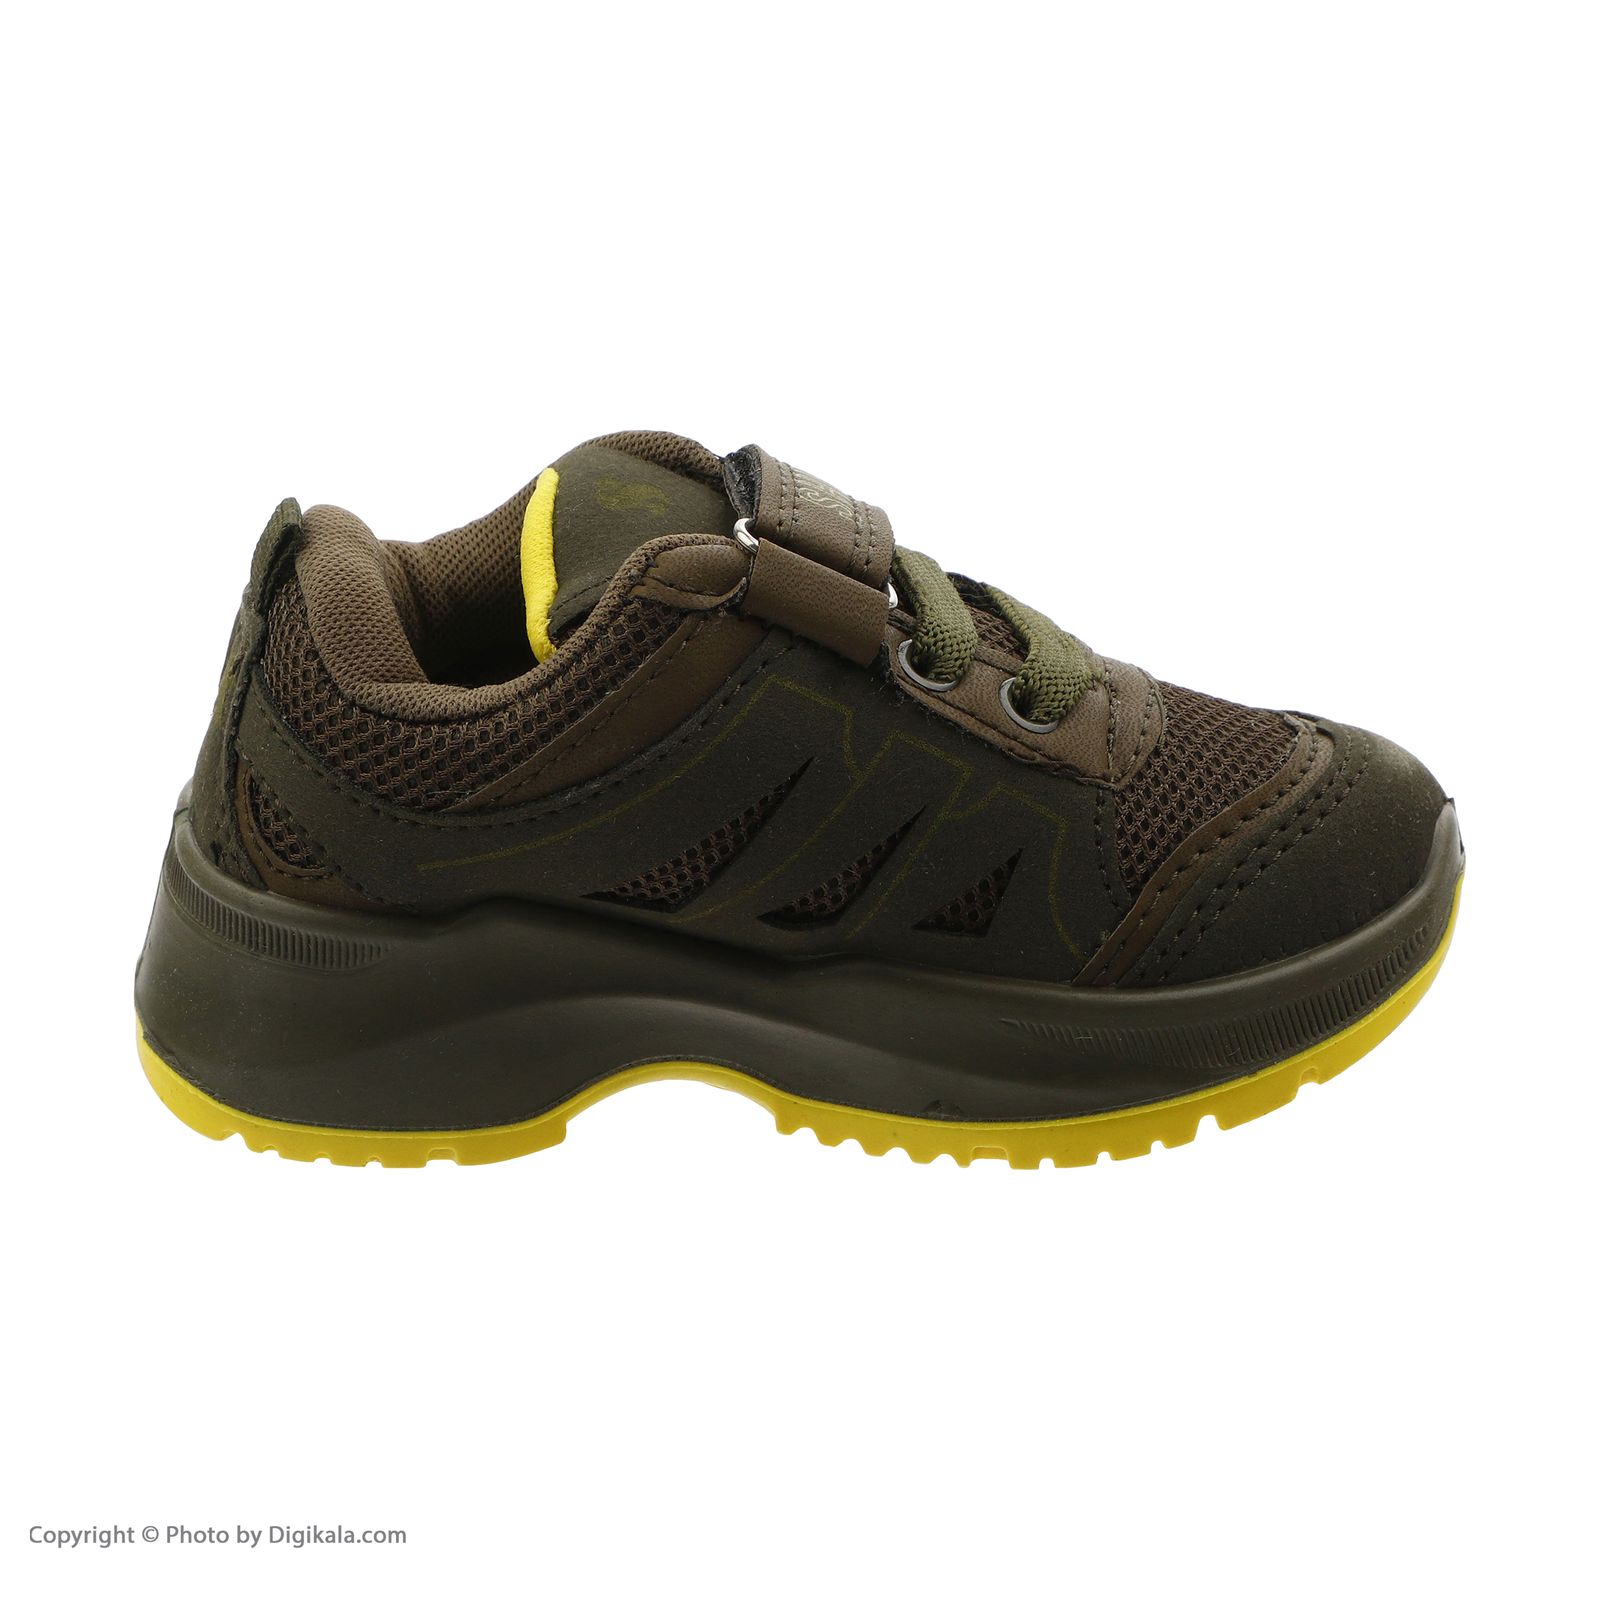  کفش مخصوص پیاده روی بچگانه شیما مدل 32662-36 -  - 6